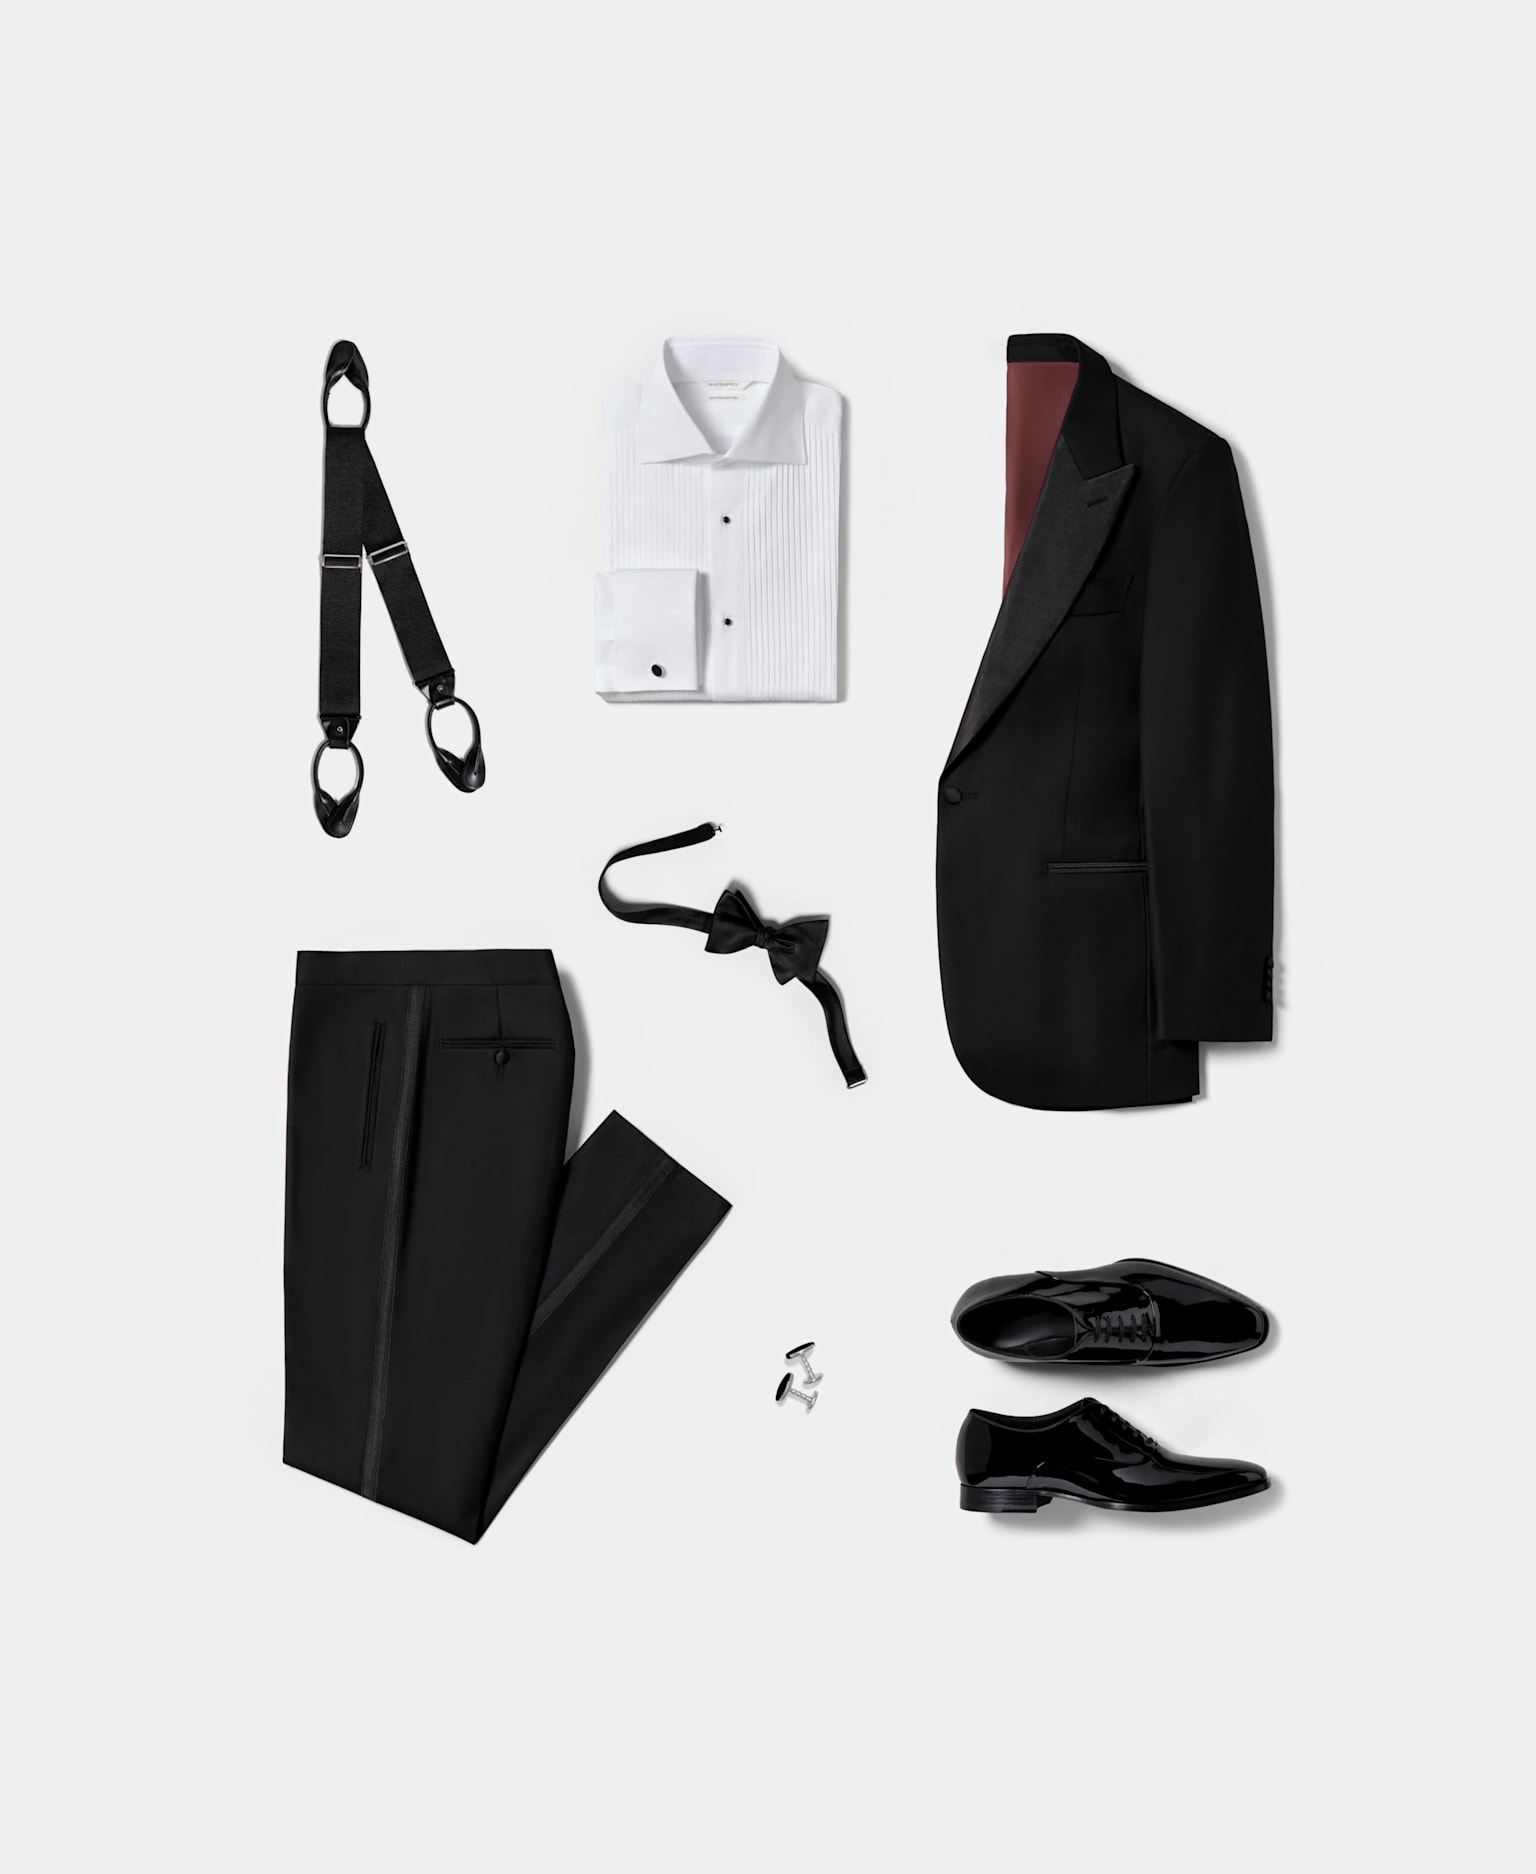 Conjunto de esmoquin con blazer negro confeccionado con solapa en pico, camisa blanca plisada, zapatos de piel y charol, tirantes negros y pajarita negra de seda.